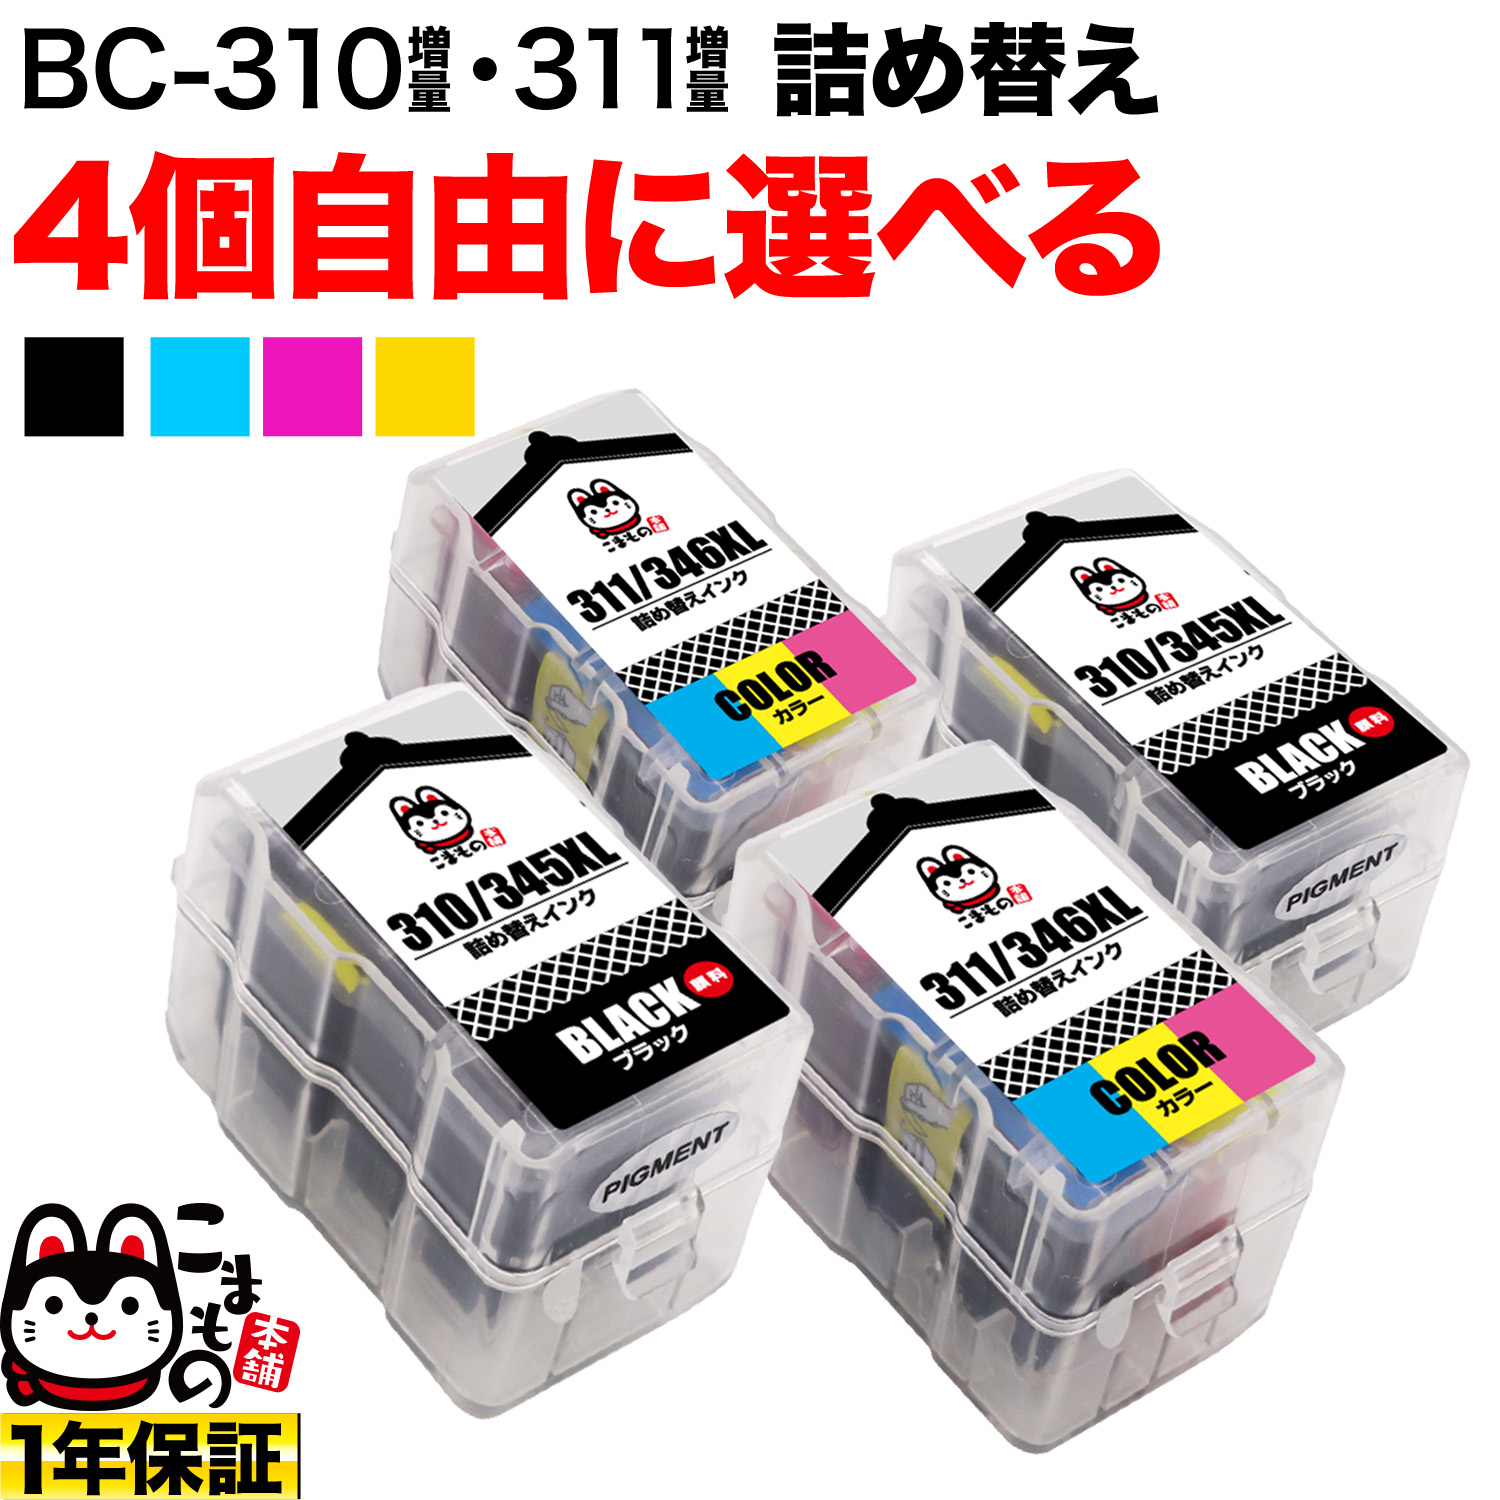 BC-311カラー5個、BC-310ブラック5個の合計10個PC周辺機器